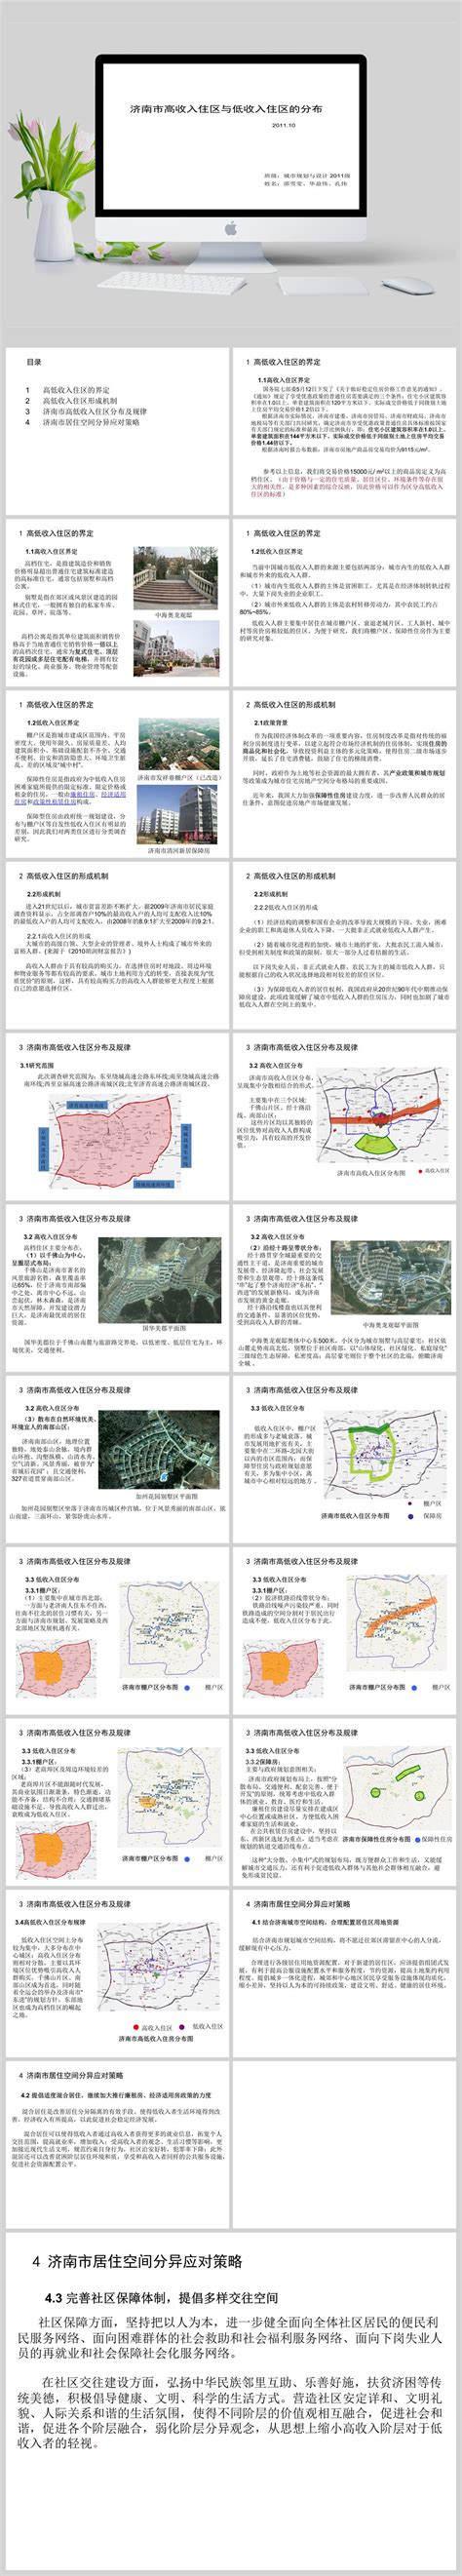 济南市高收入住区与低收入住区的分布PPT - 当图网